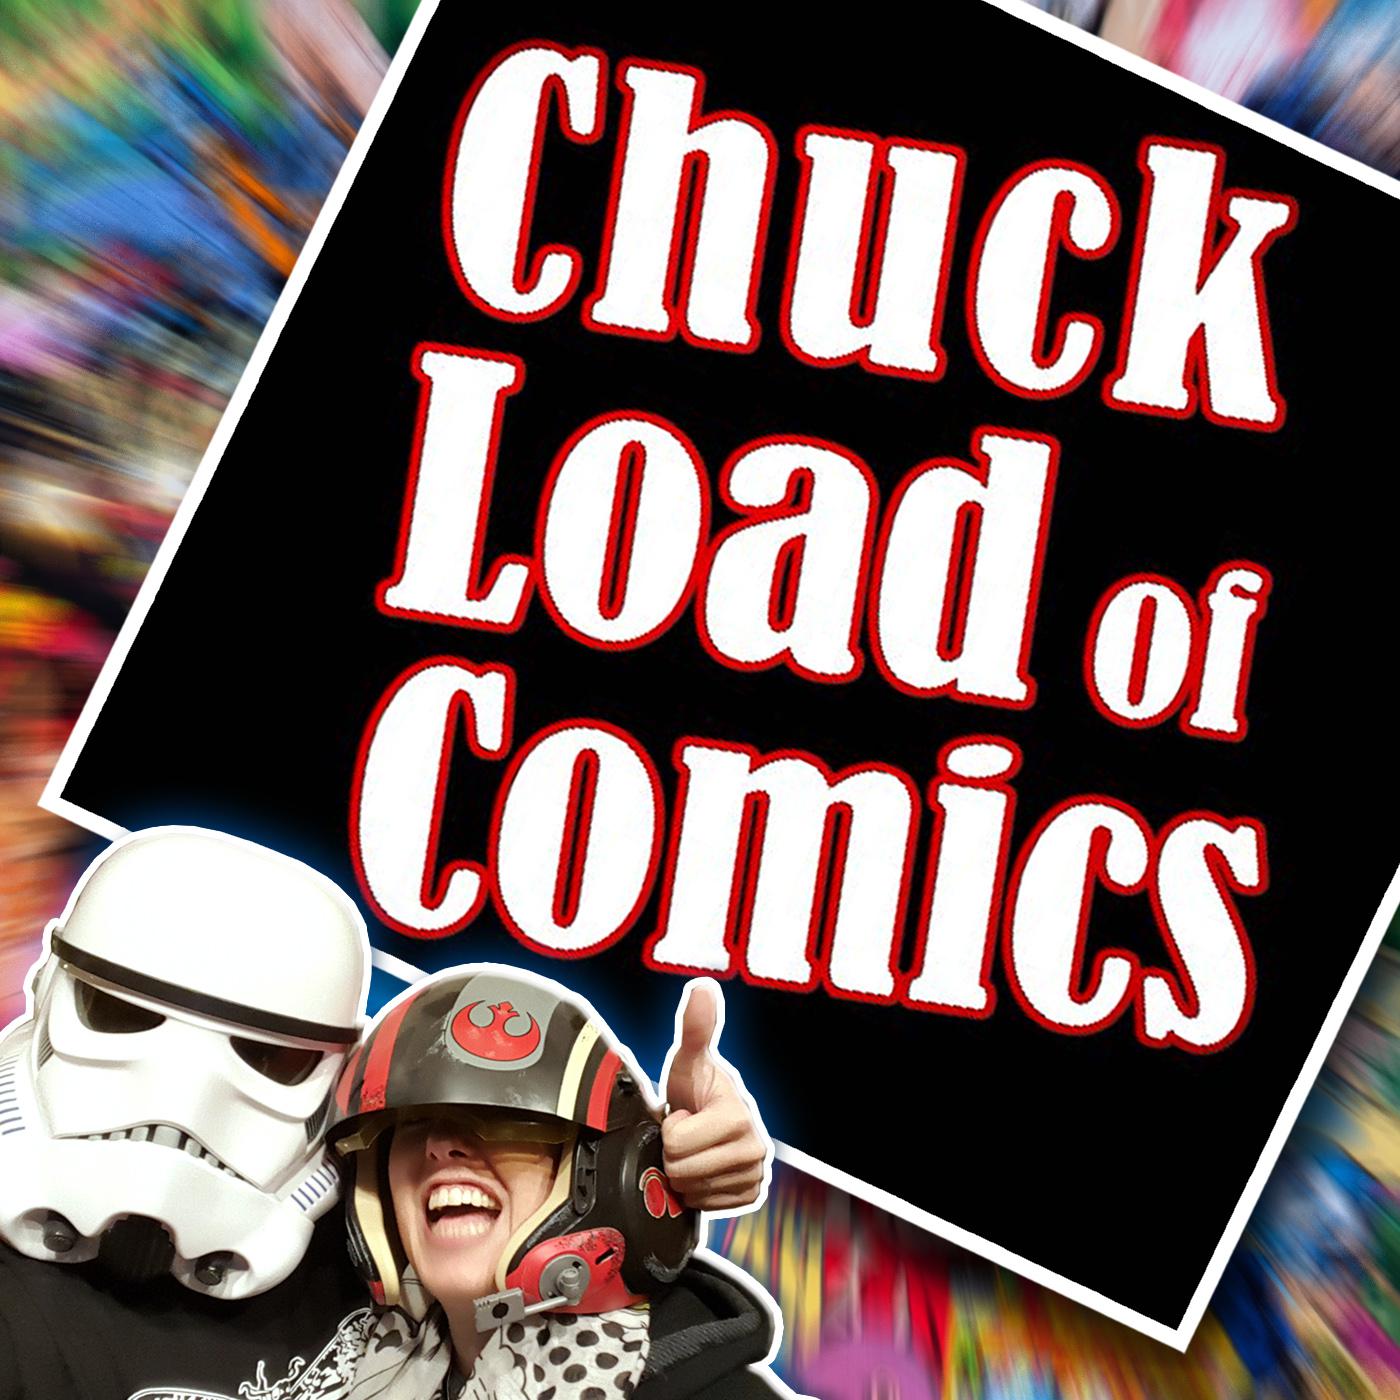 Chuck Load of Comics Logo